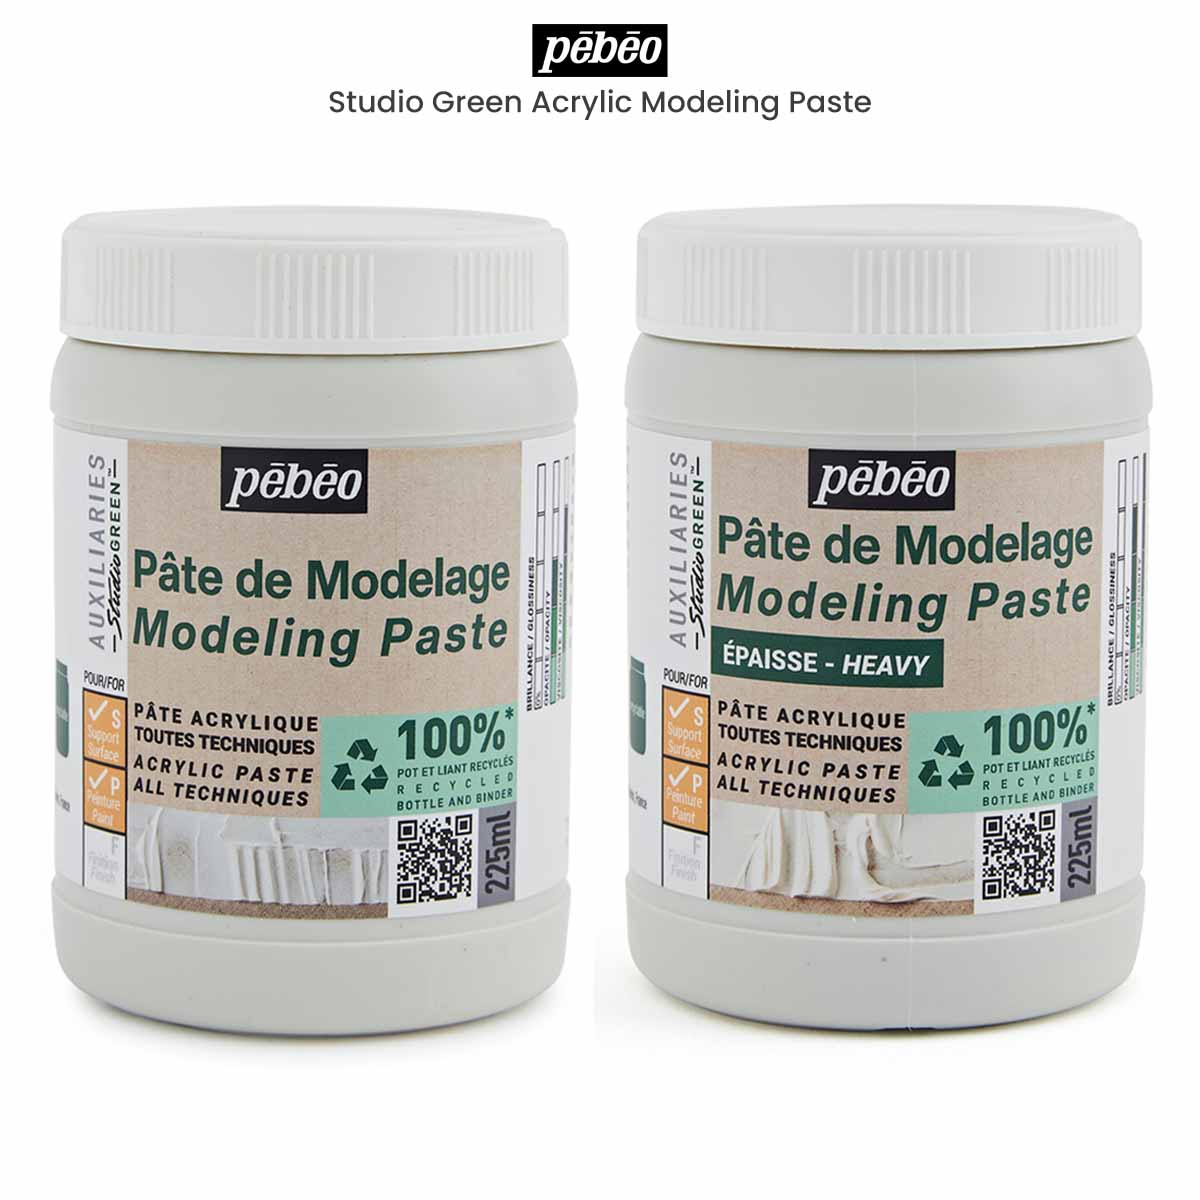 Pebeo Modeling Paste - 1 Liter Bottle